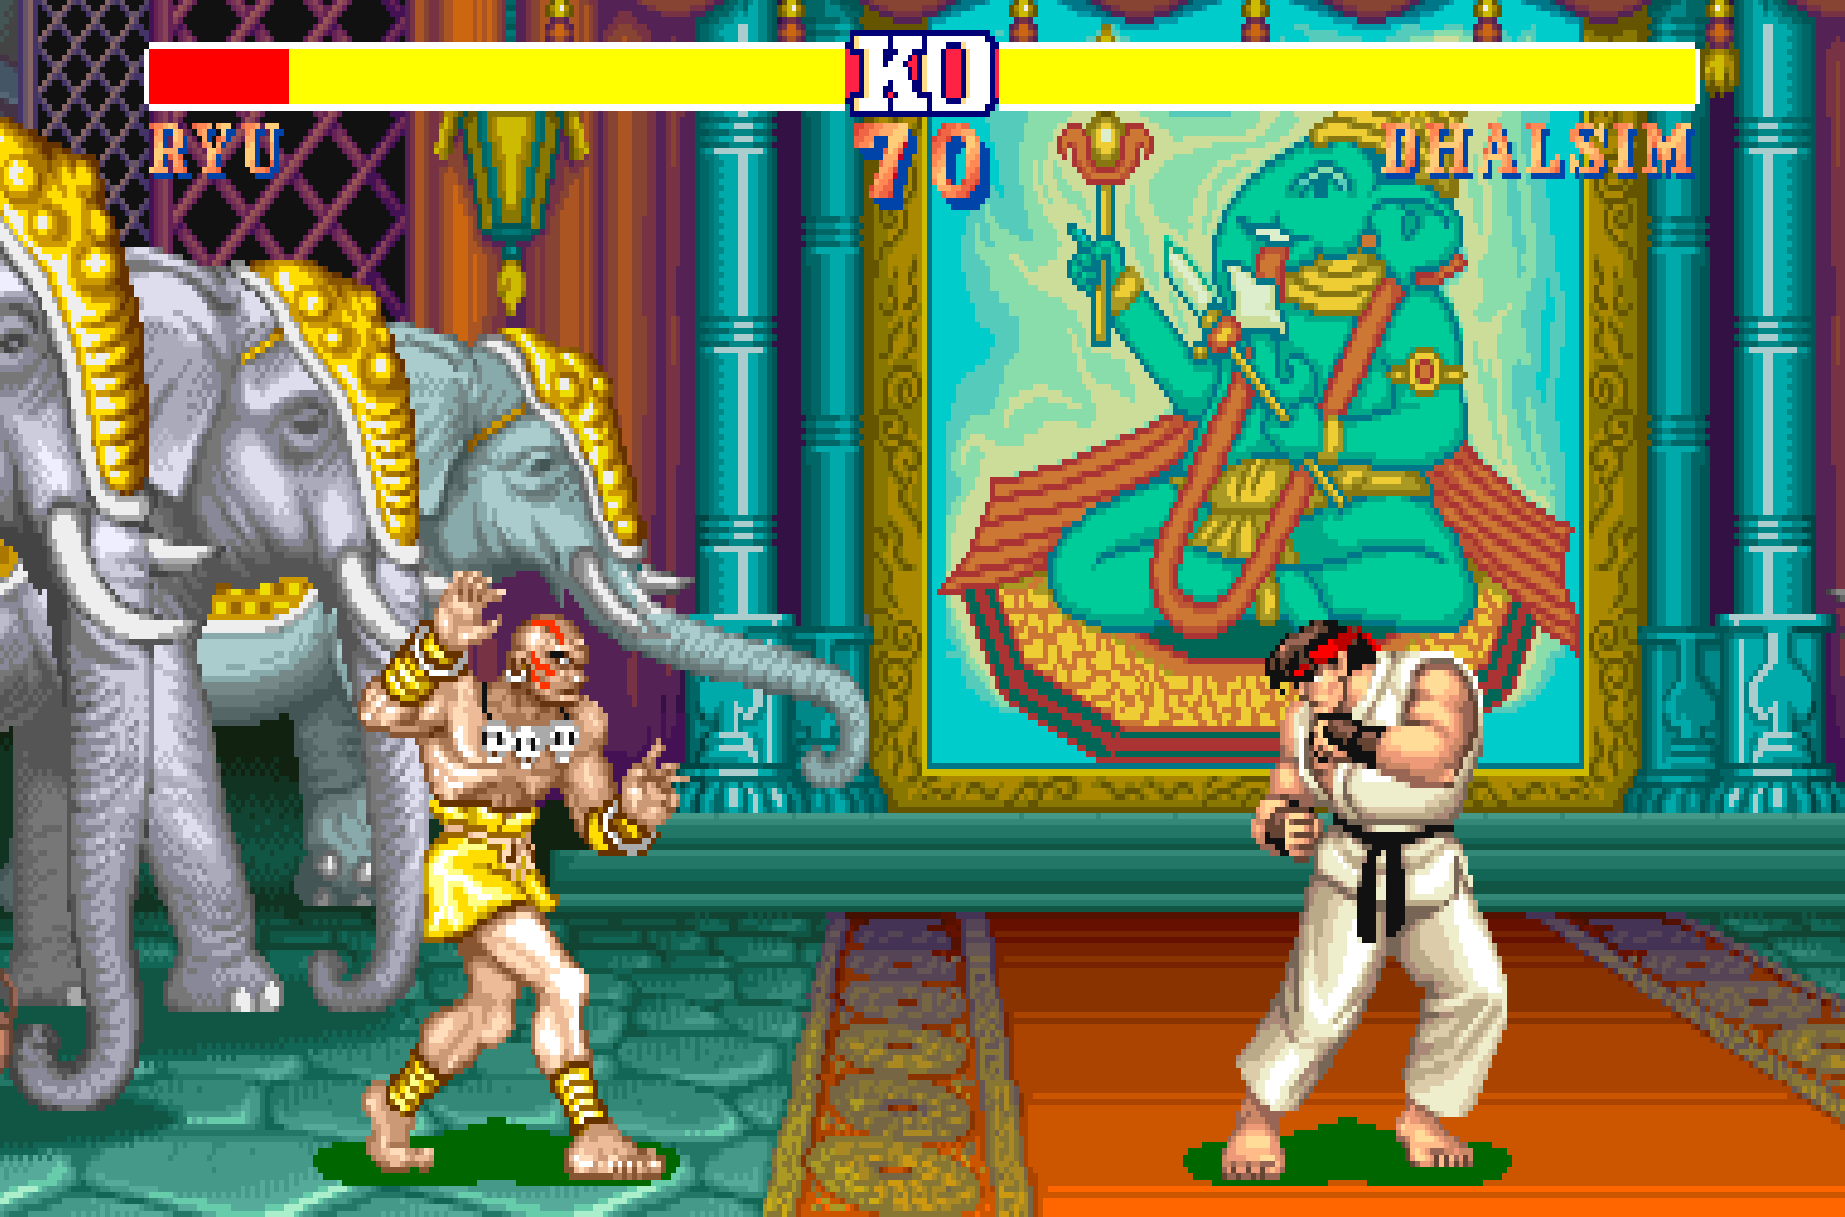 Street Fighter 2 - The World Warrior - Full Game Walkthrough